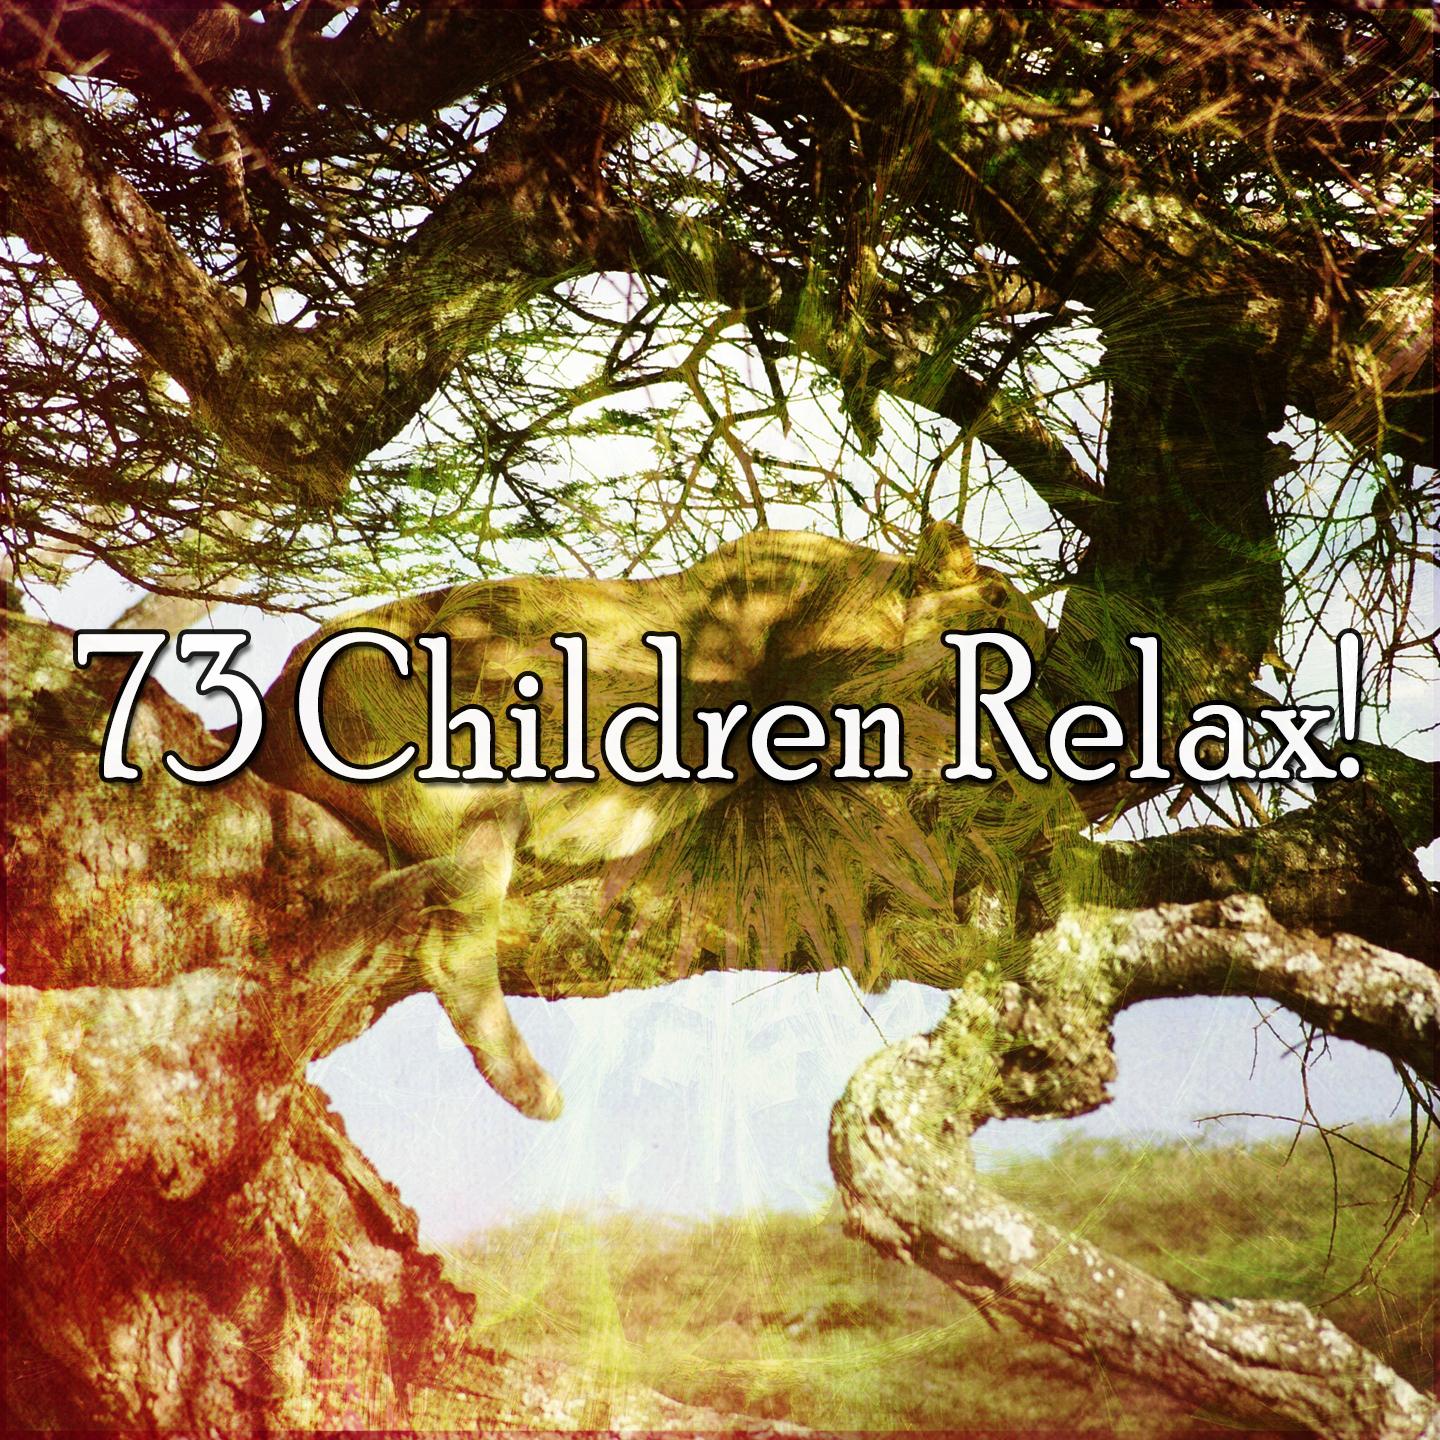 73 Children Relax!